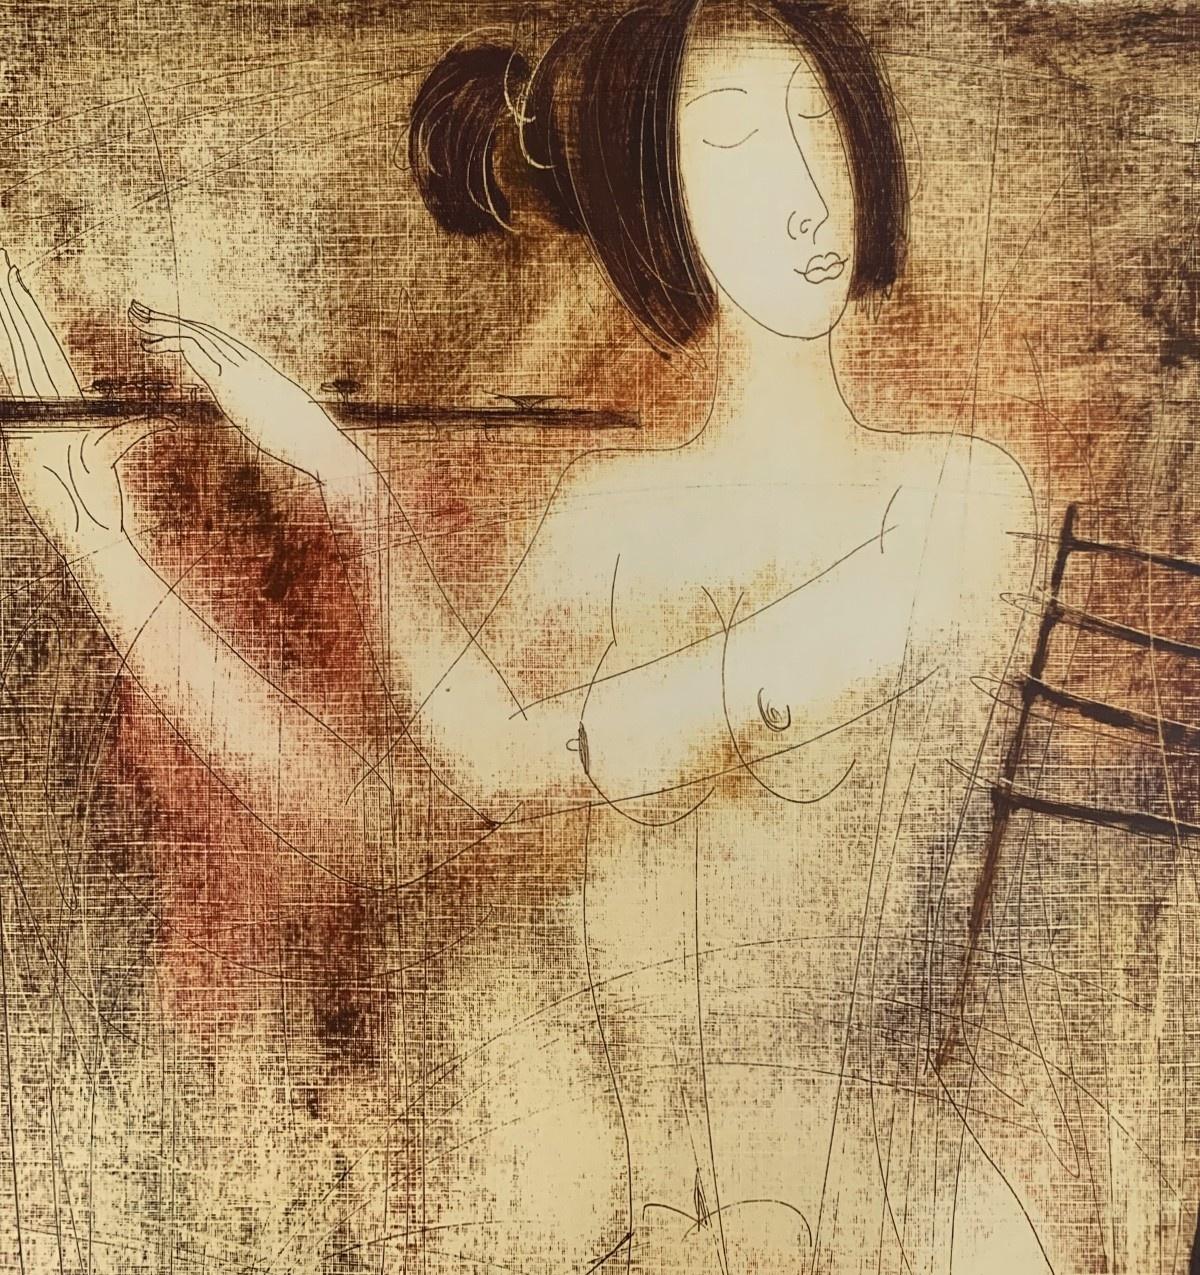 Zeitgenössischer figurativer Akt-Monotypie-Druck des weißrussischen Künstlers Siergiej Timochow. Der Druck zeigt eine Frau, die auf einer Flöte spielt. Die Komposition ist monochromatisch. Das Papier/Karton ist strukturiert. 

Siergiej Timochow